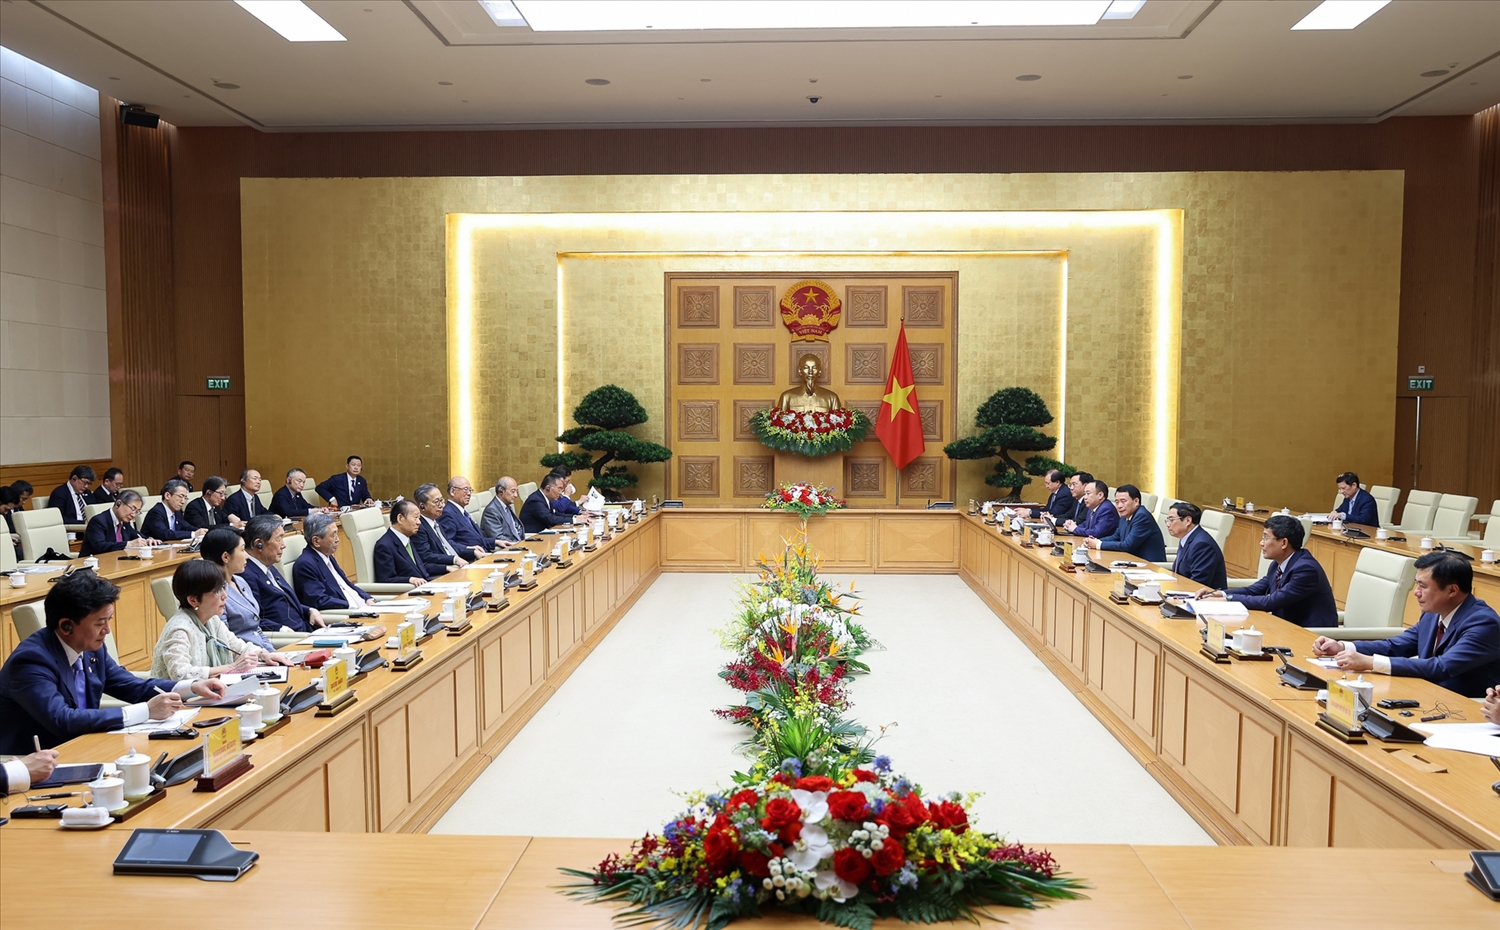 Thủ tướng đề nghị ông Nikai vận động Chính phủ Nhật Bản tiếp tục cung cấp ODA thế hệ mới cho Việt Nam trong các lĩnh vực xây dựng cơ sở hạ tầng chiến lược… - Ảnh: VGP/Nhật Bắc